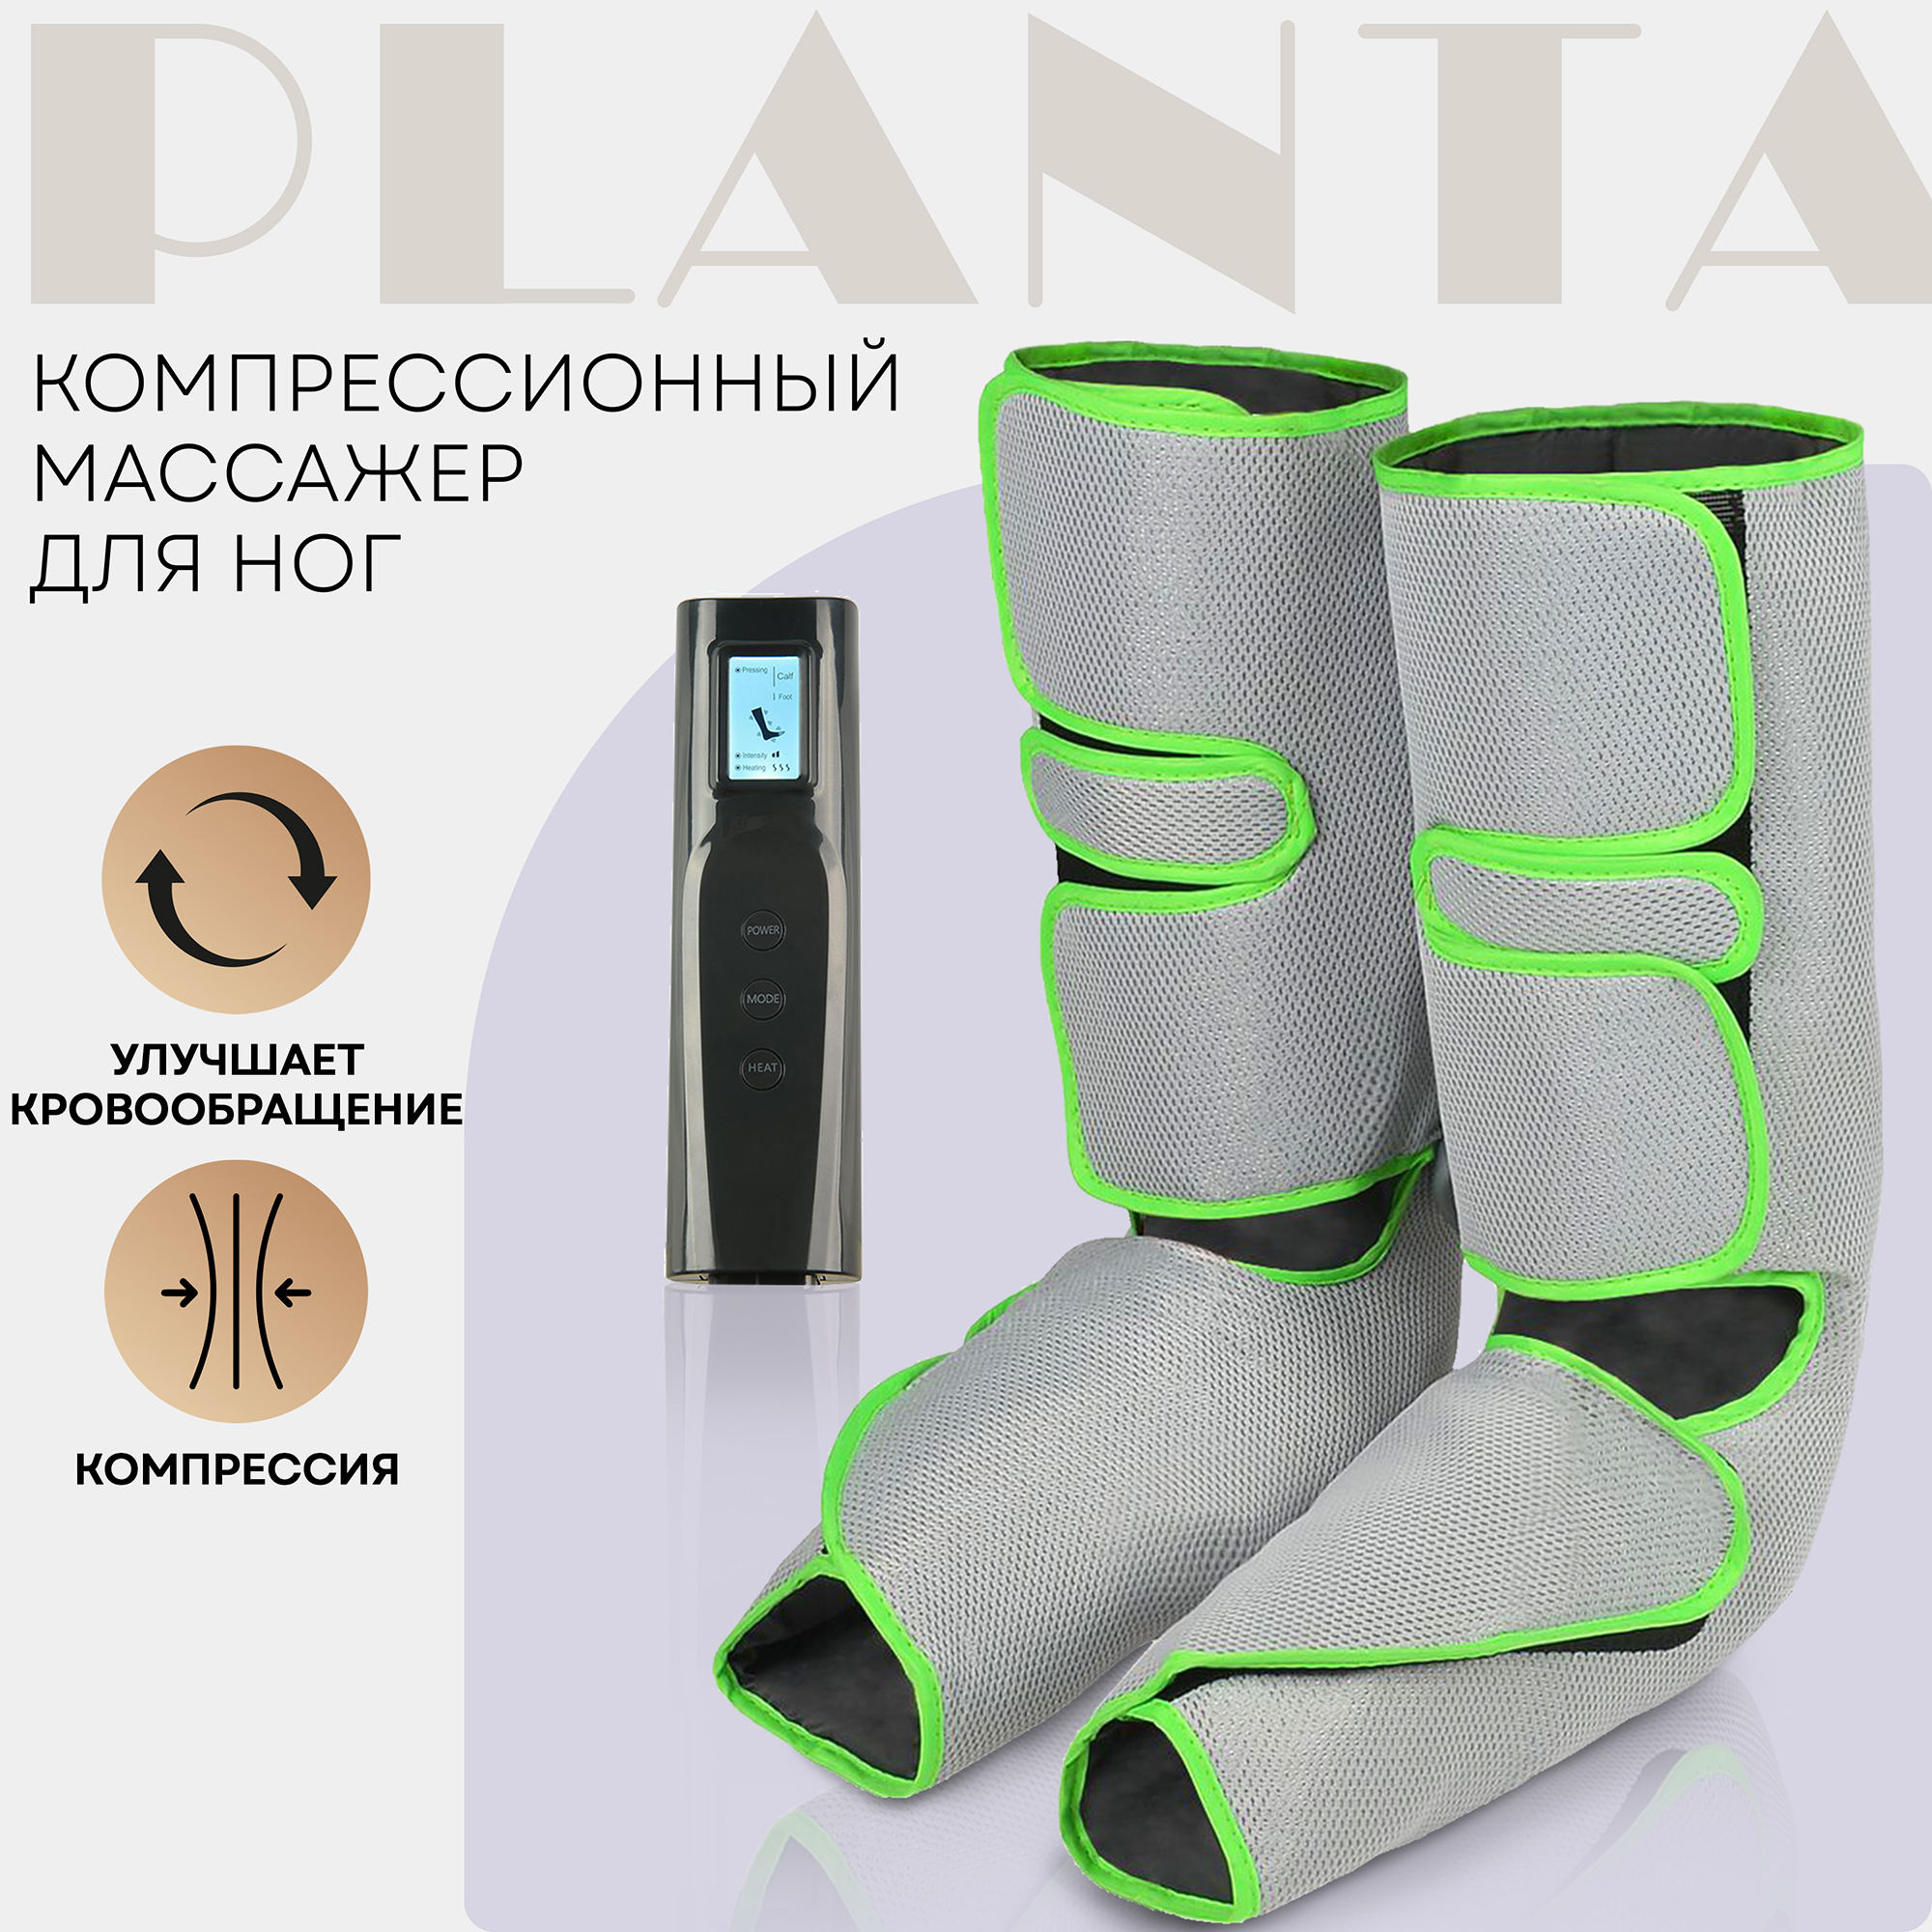 Массажер для ног Planta MFC-40 - купить в Москве, цены на Мегамаркет | 600002148114